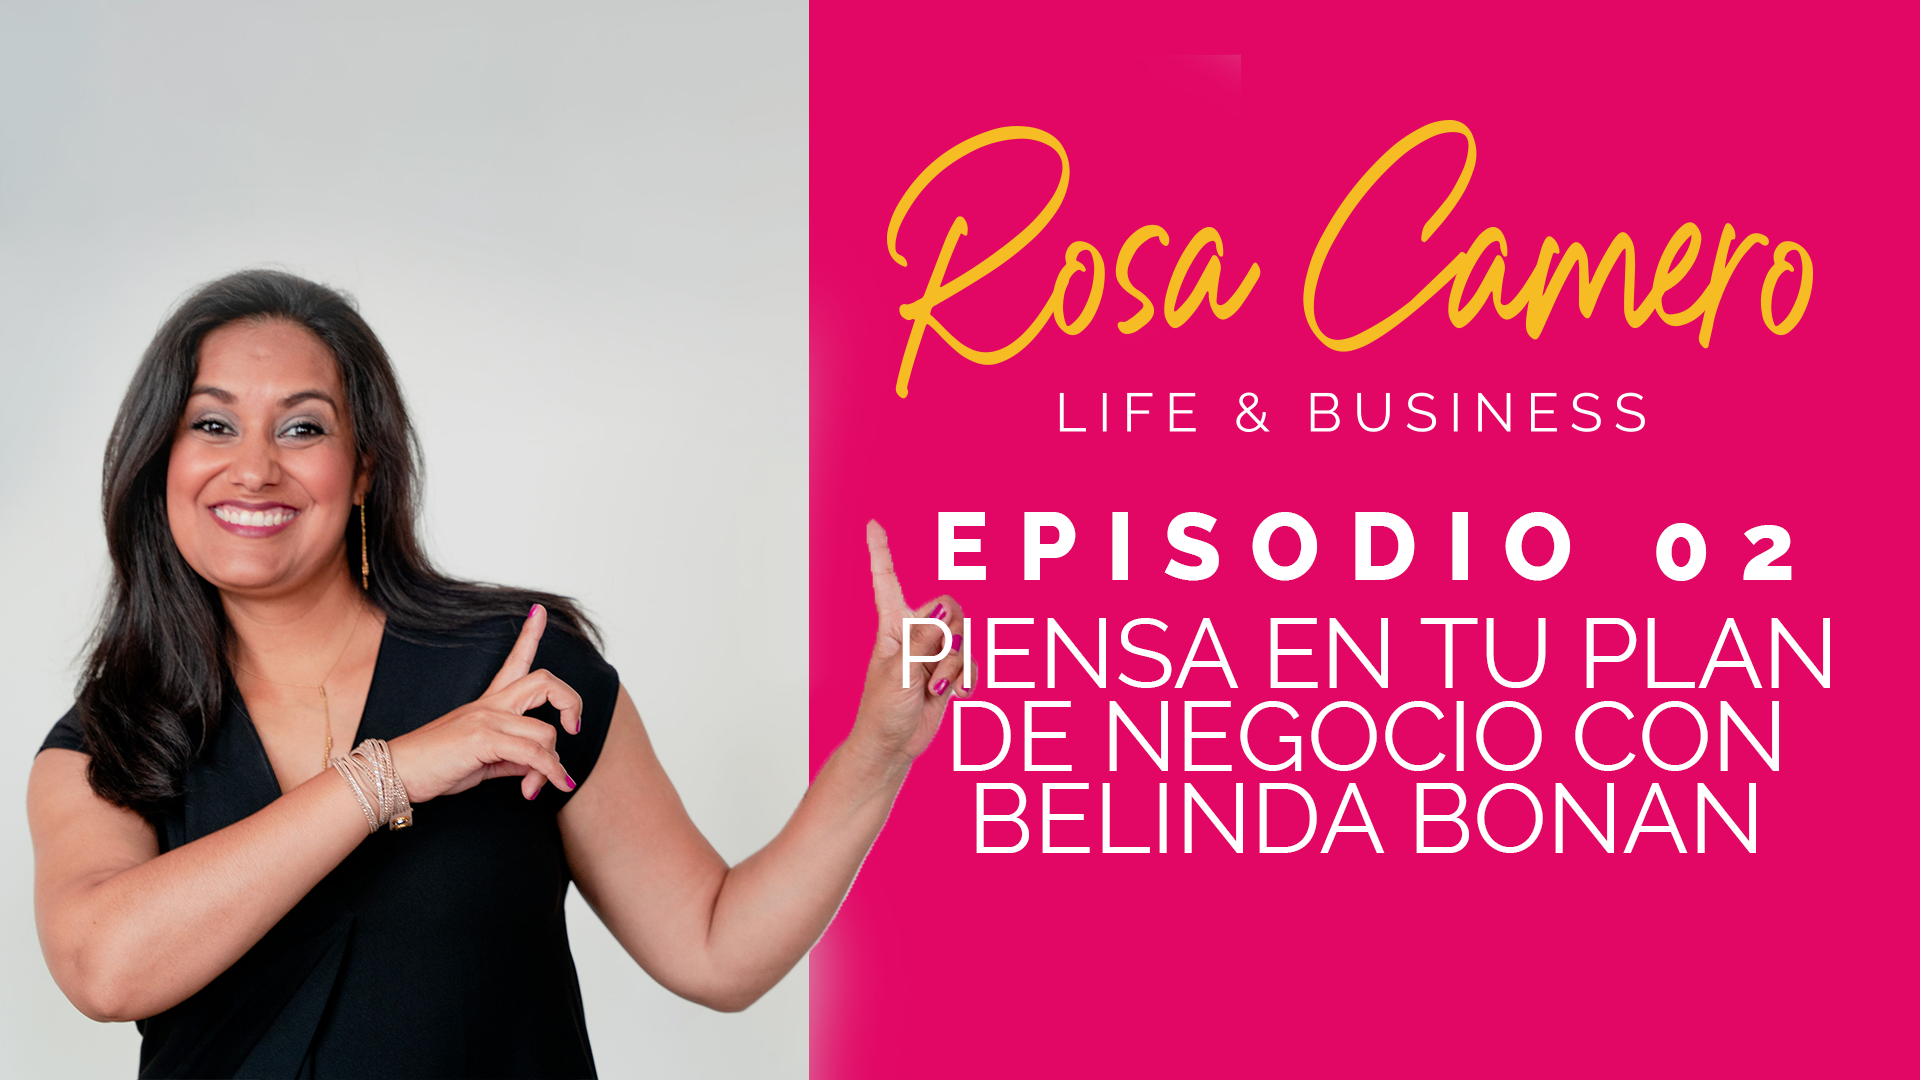 En este momento estás viendo Life & Business con Rosa Camero Episodio 02: Piensa en tu plan de negocio con Belinda Bonan